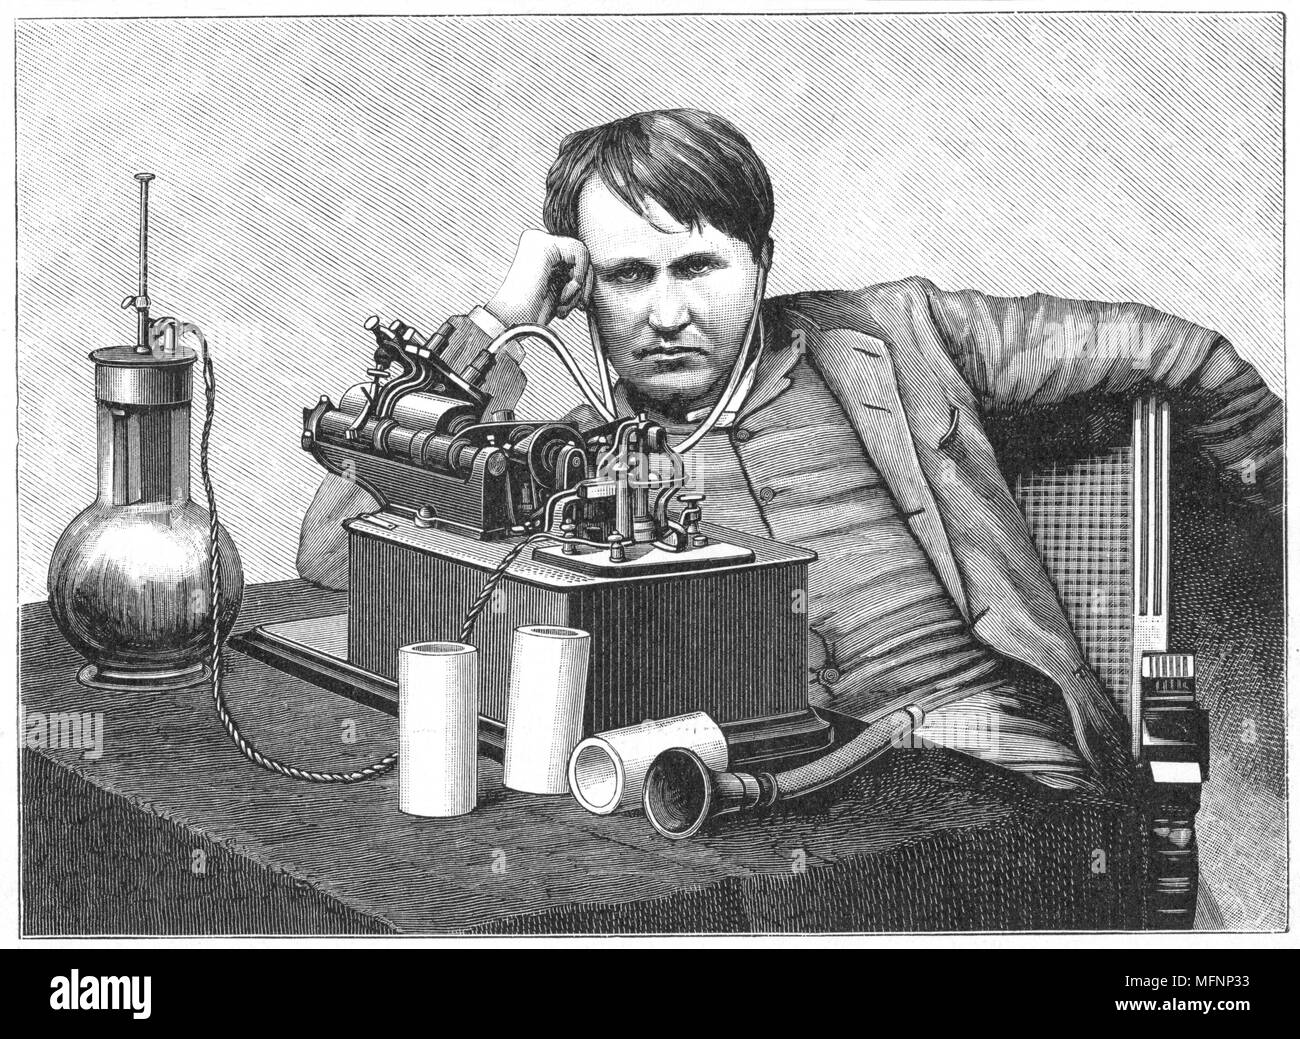 Thomas Alva Edison (1847-1931) amerikanischer Erfinder, der Wiedergabe einer Aufzeichnung auf seinem phonographen. Dies ist ein elektrisches Modell durch eine Bichromate Brennstoffzelle (links), eine Form der Nassbatterie. Gravur c 1895. Stockfoto